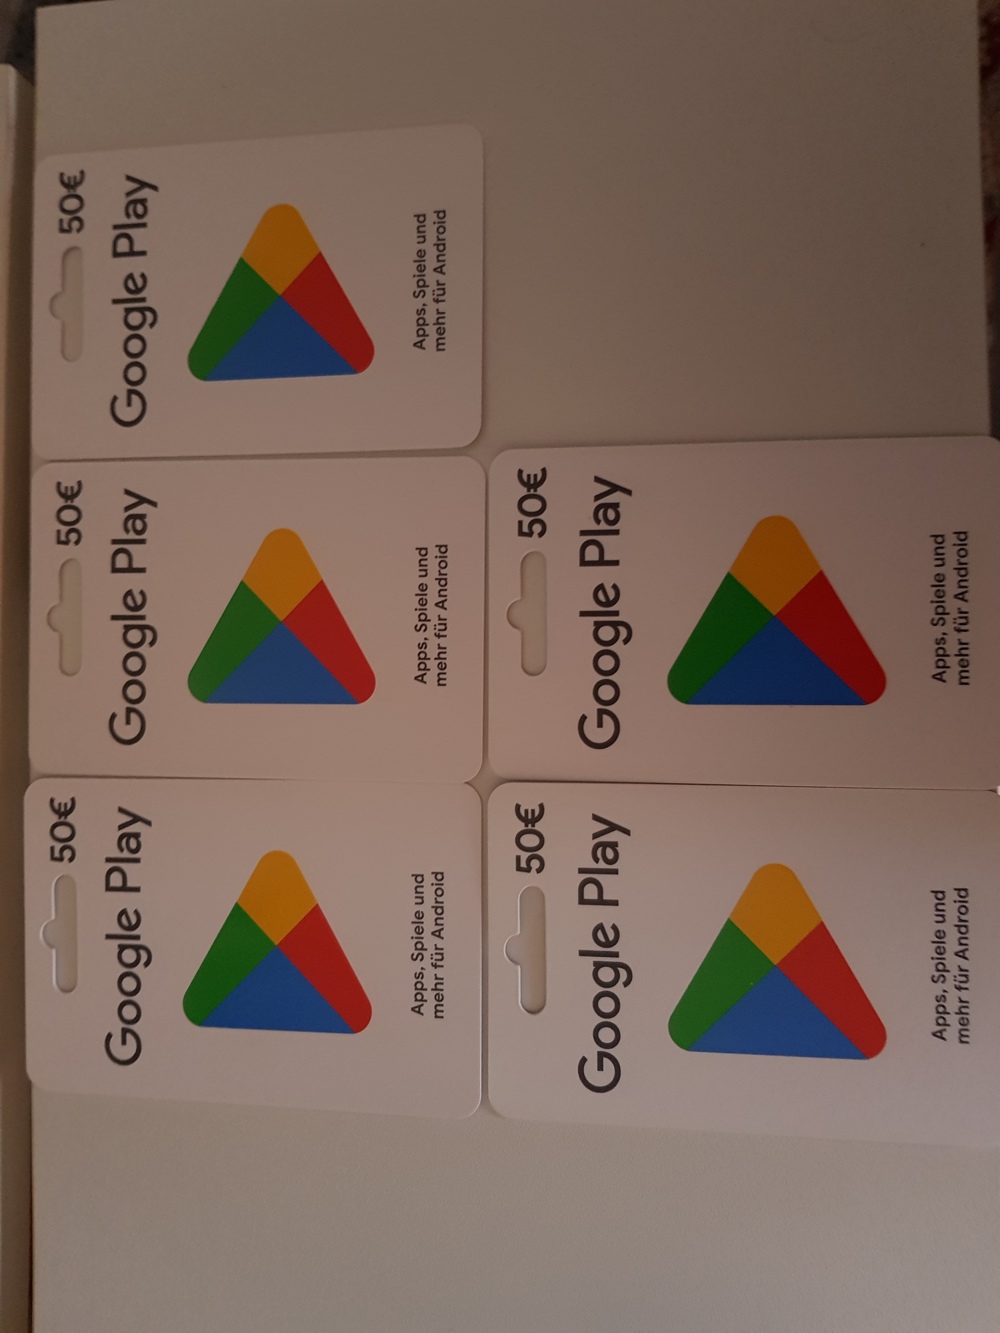 Biete wegen Fehlkauf 5 Google-Play Karten  je 50,00  ungebraucht an